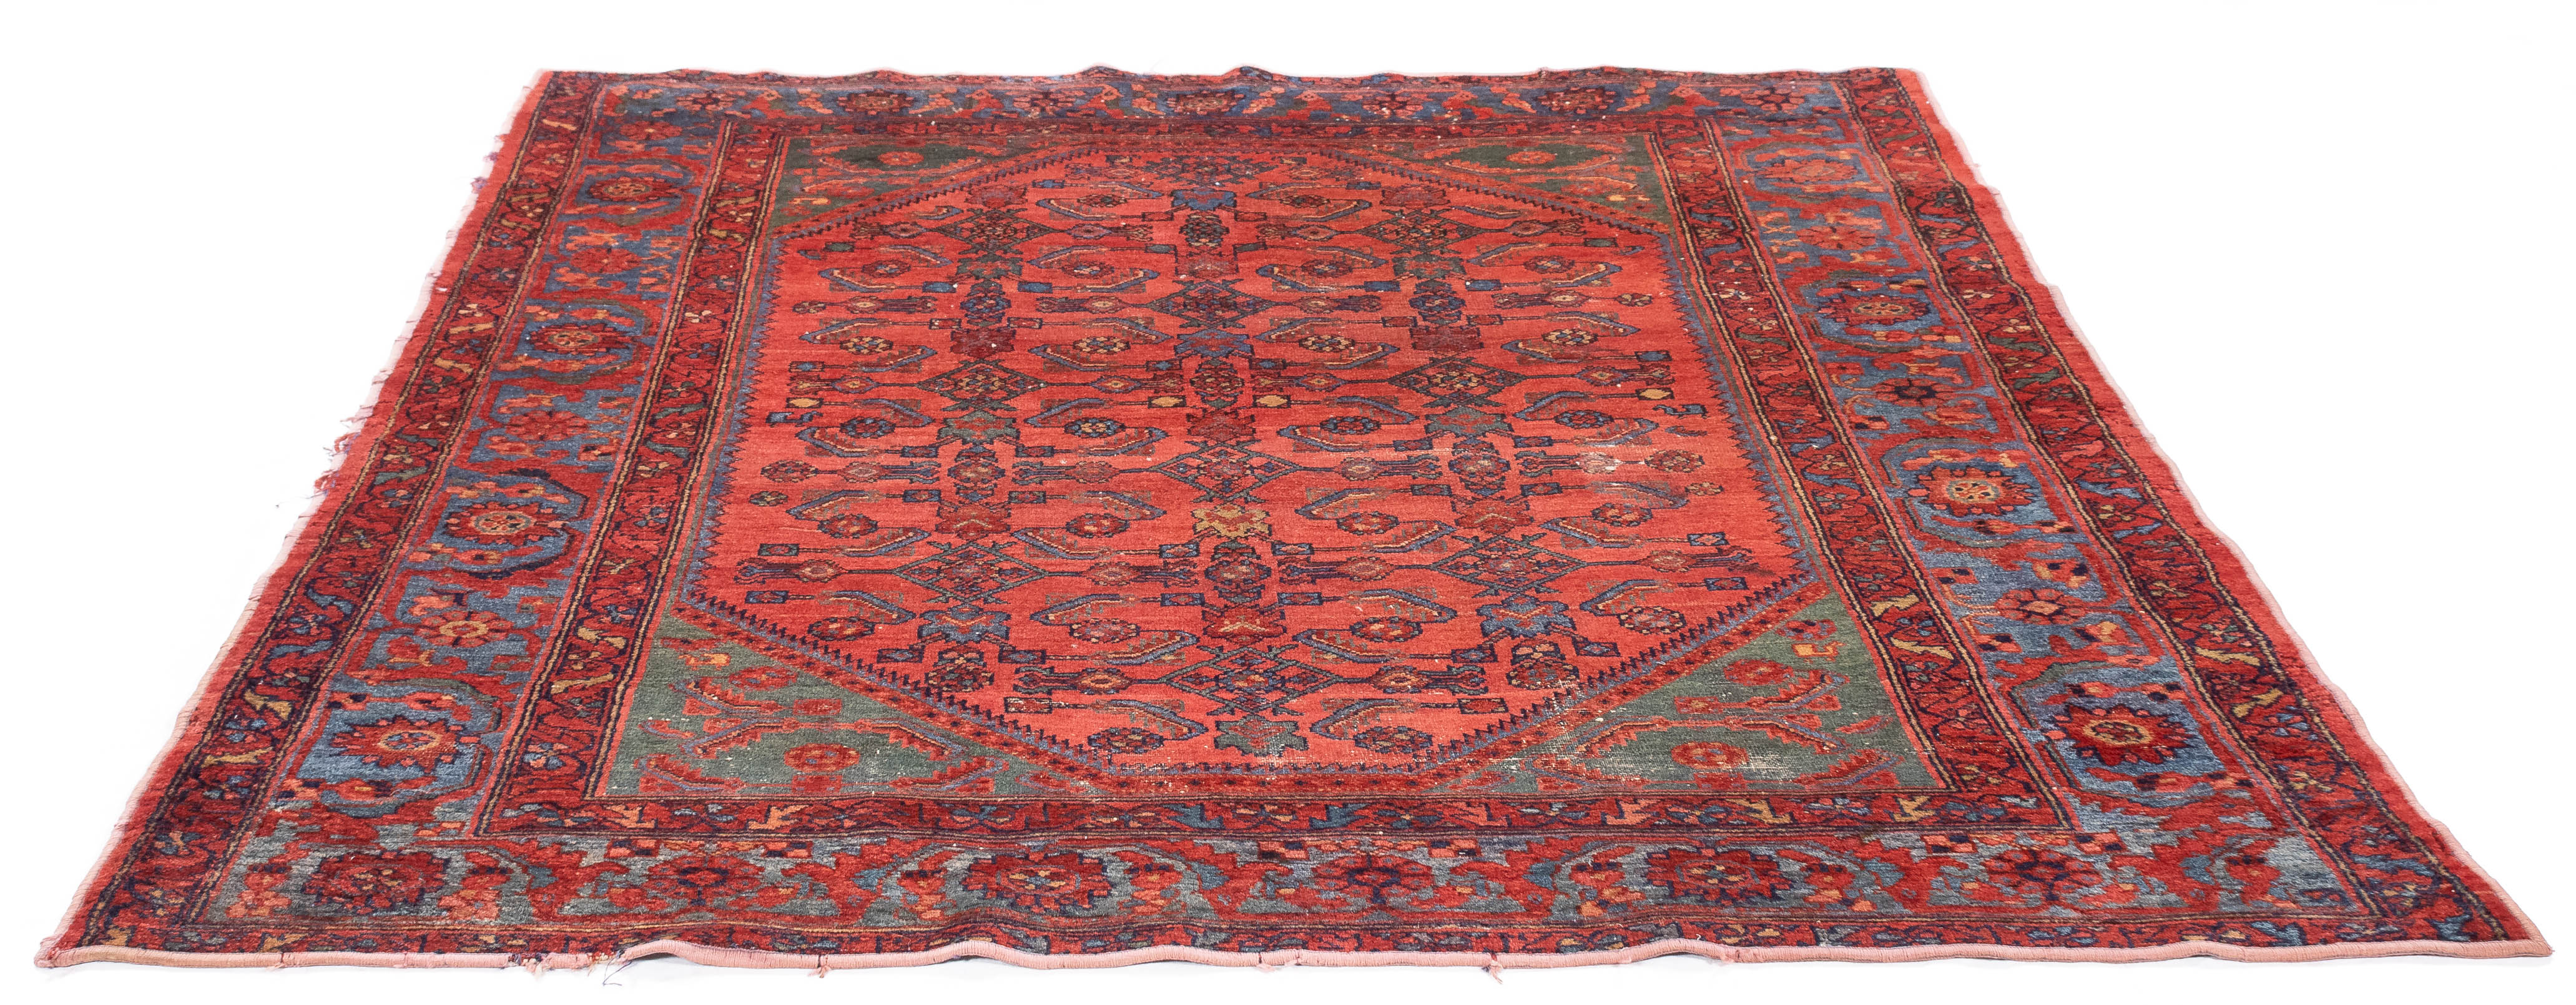 Antique Persian Hamadan Rug <br> 4'11 x 5'9